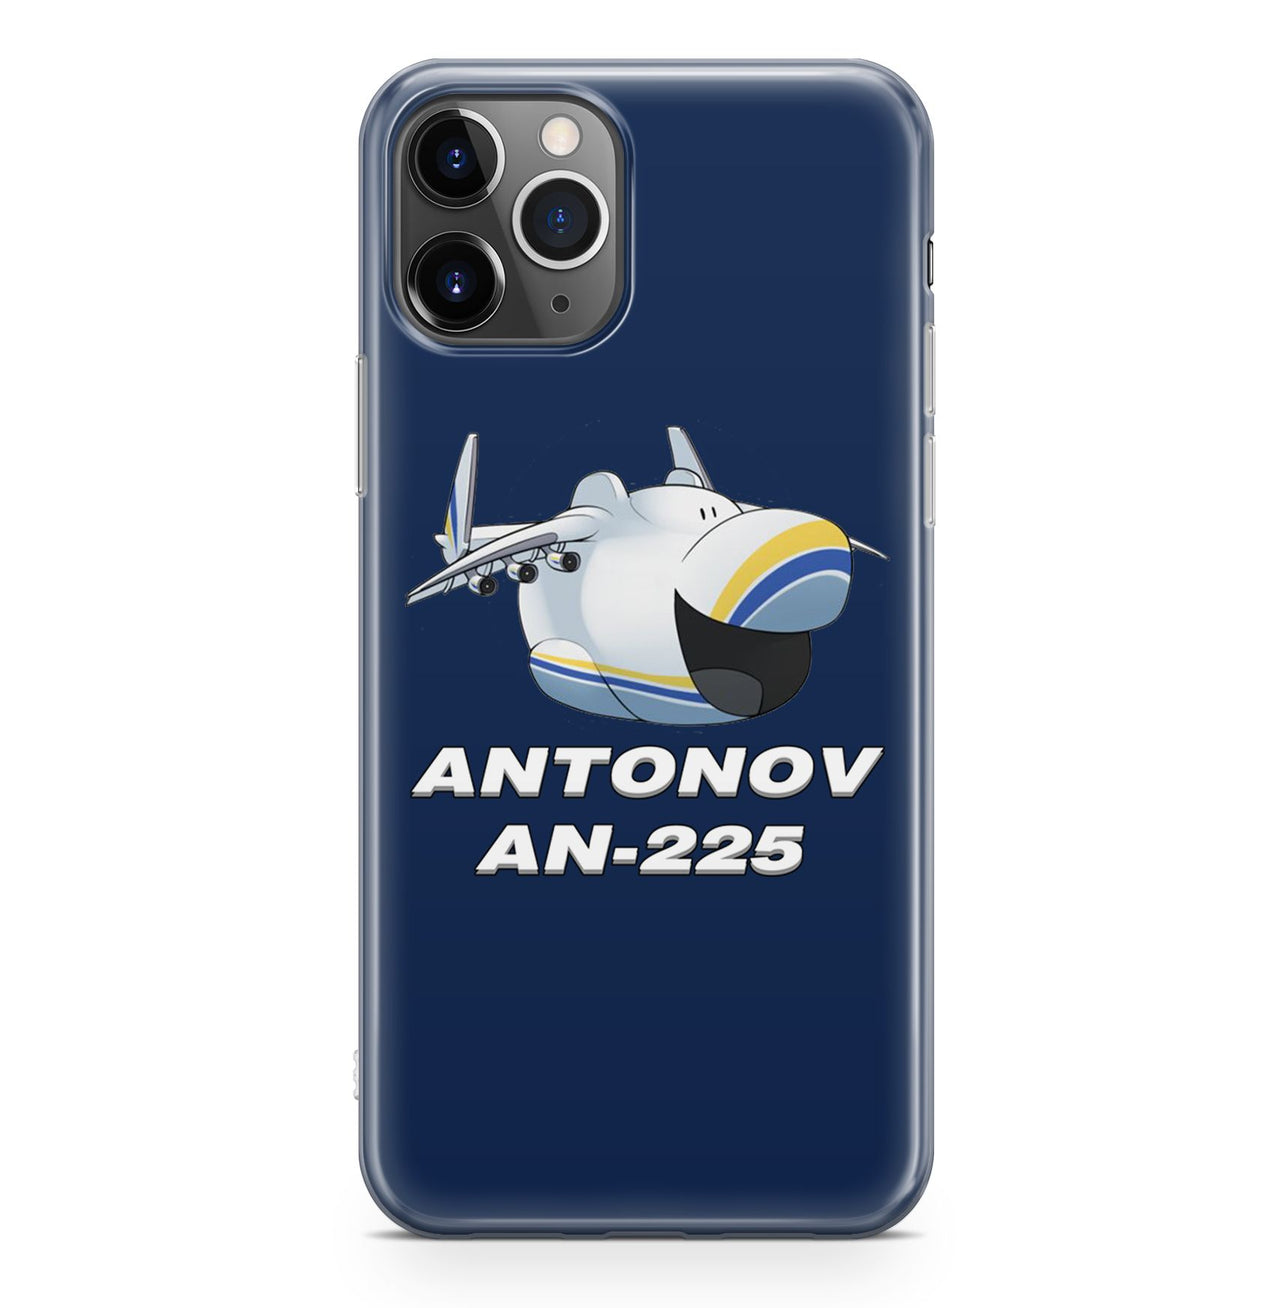 Antonov AN-225 (23) Designed iPhone Cases